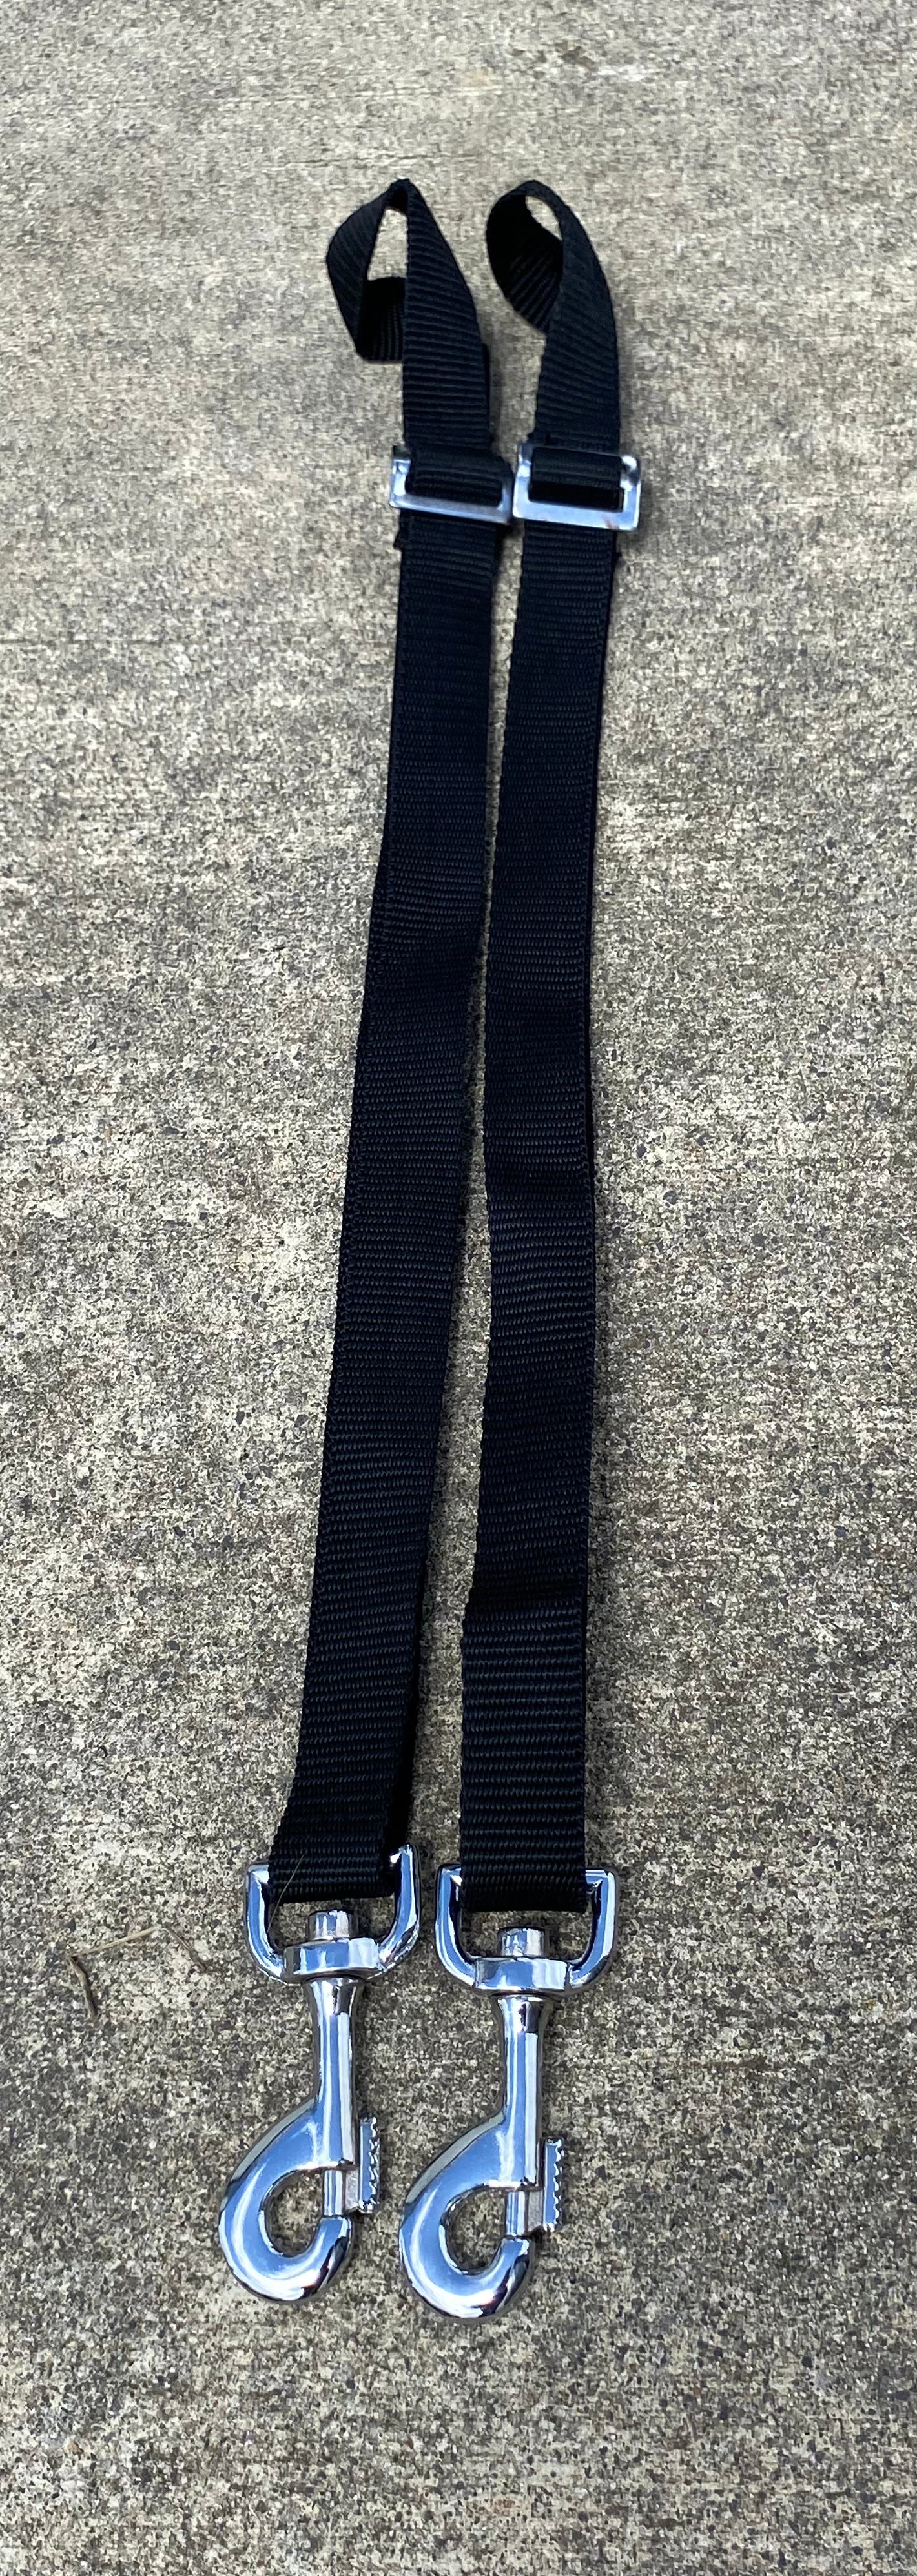 Leg straps - Pair